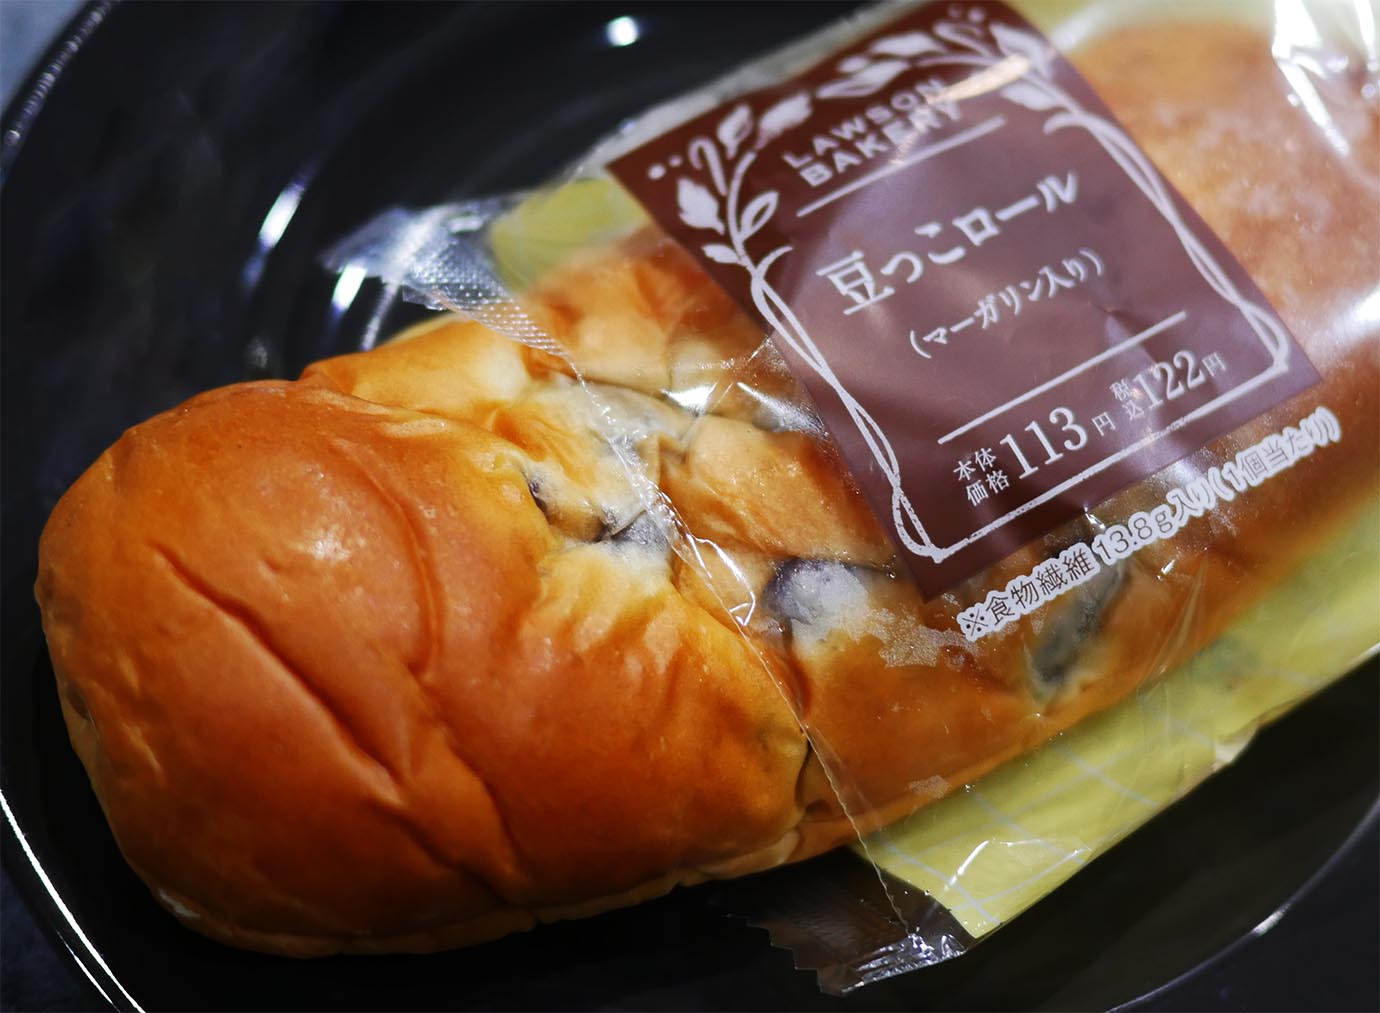 【最強】ローソンの岩手県限定パン「豆っこロール」が激ウマ / 全国販売してほしいレベル